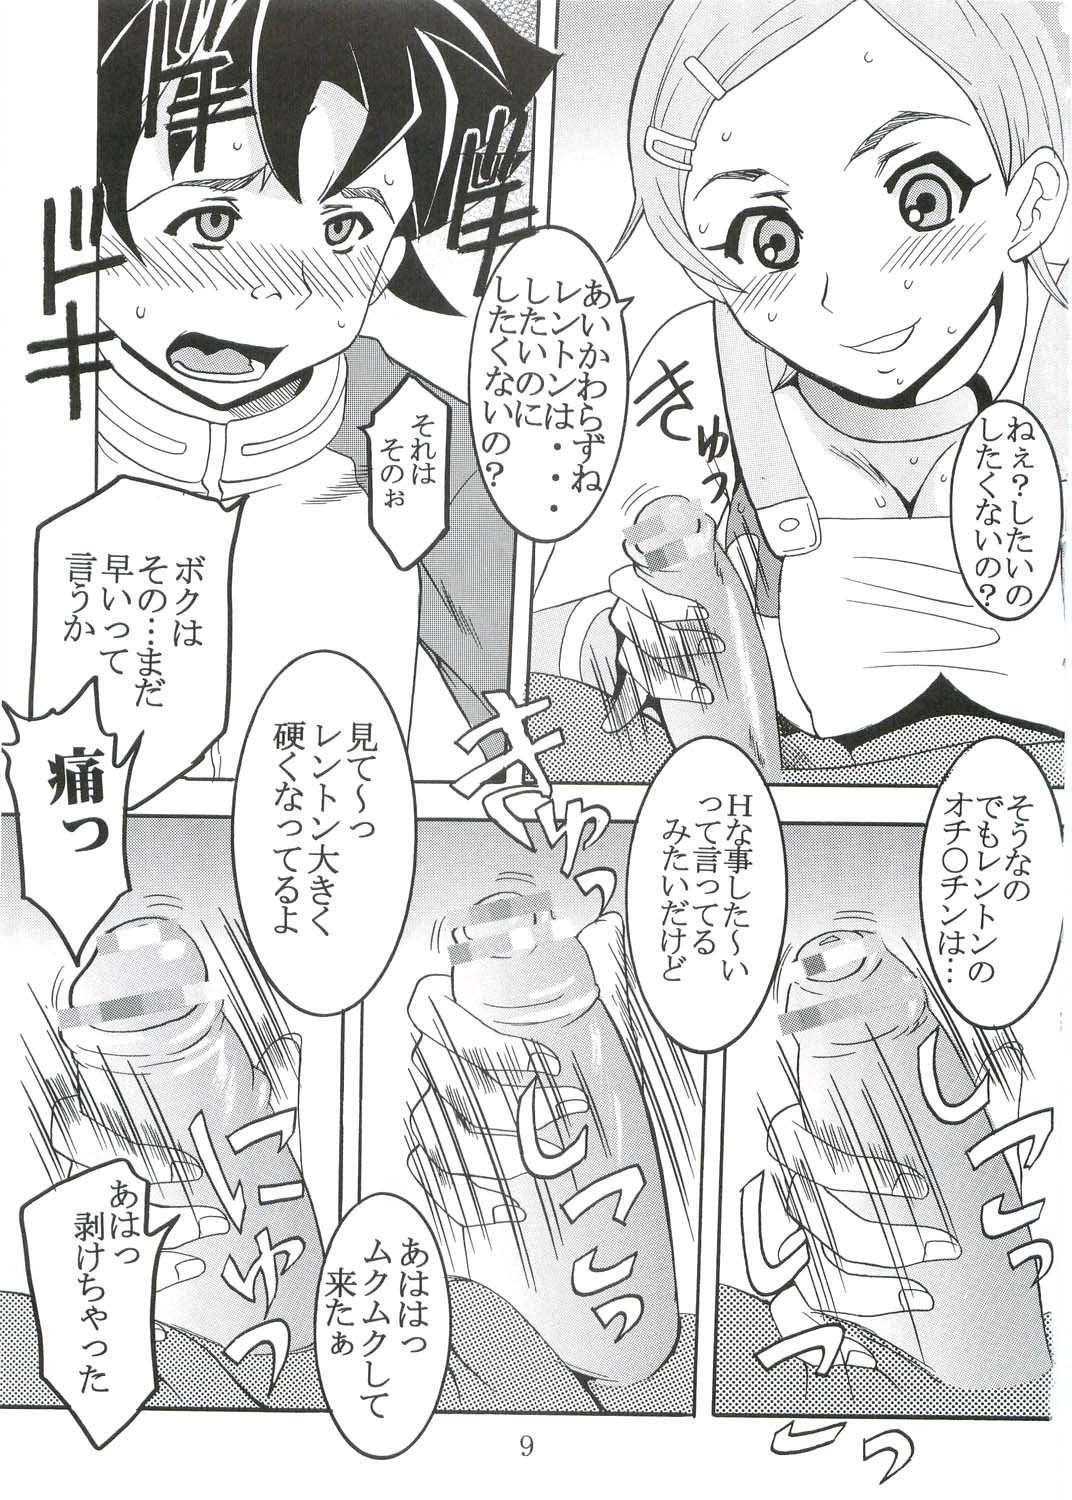 [St. Rio (Kitty, Kouenji Rei)] Ura ray-out (Eureka seveN) page 10 full